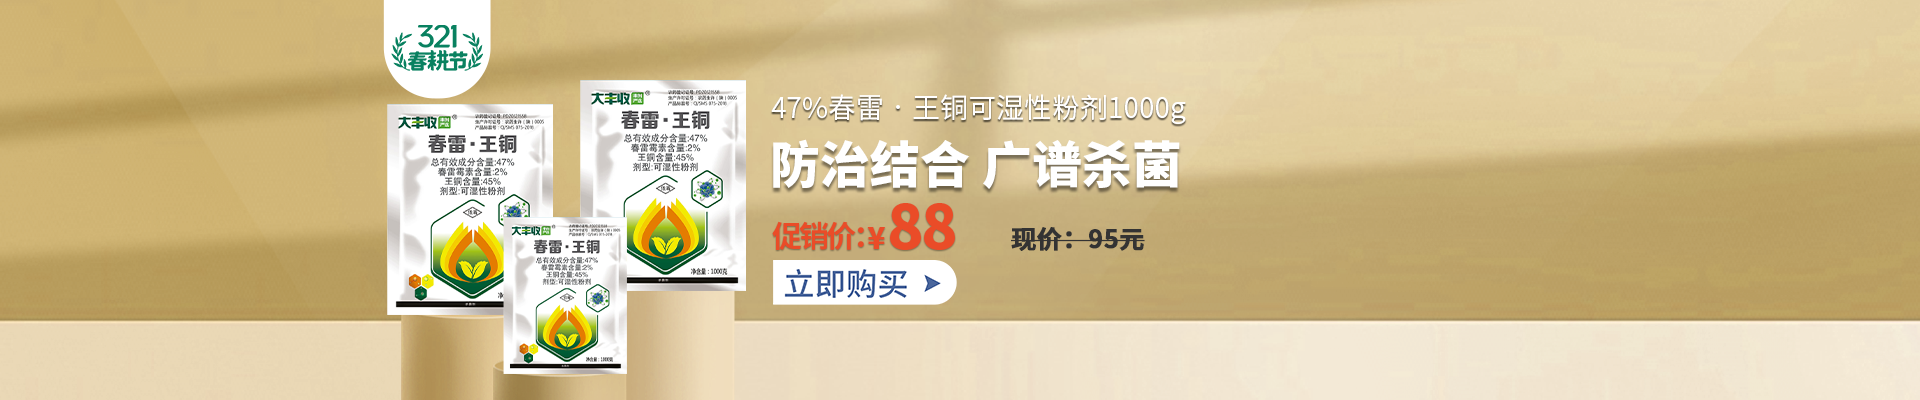 【3月】众筹-【丰创严选】47%春雷•王铜可湿性粉剂1000g